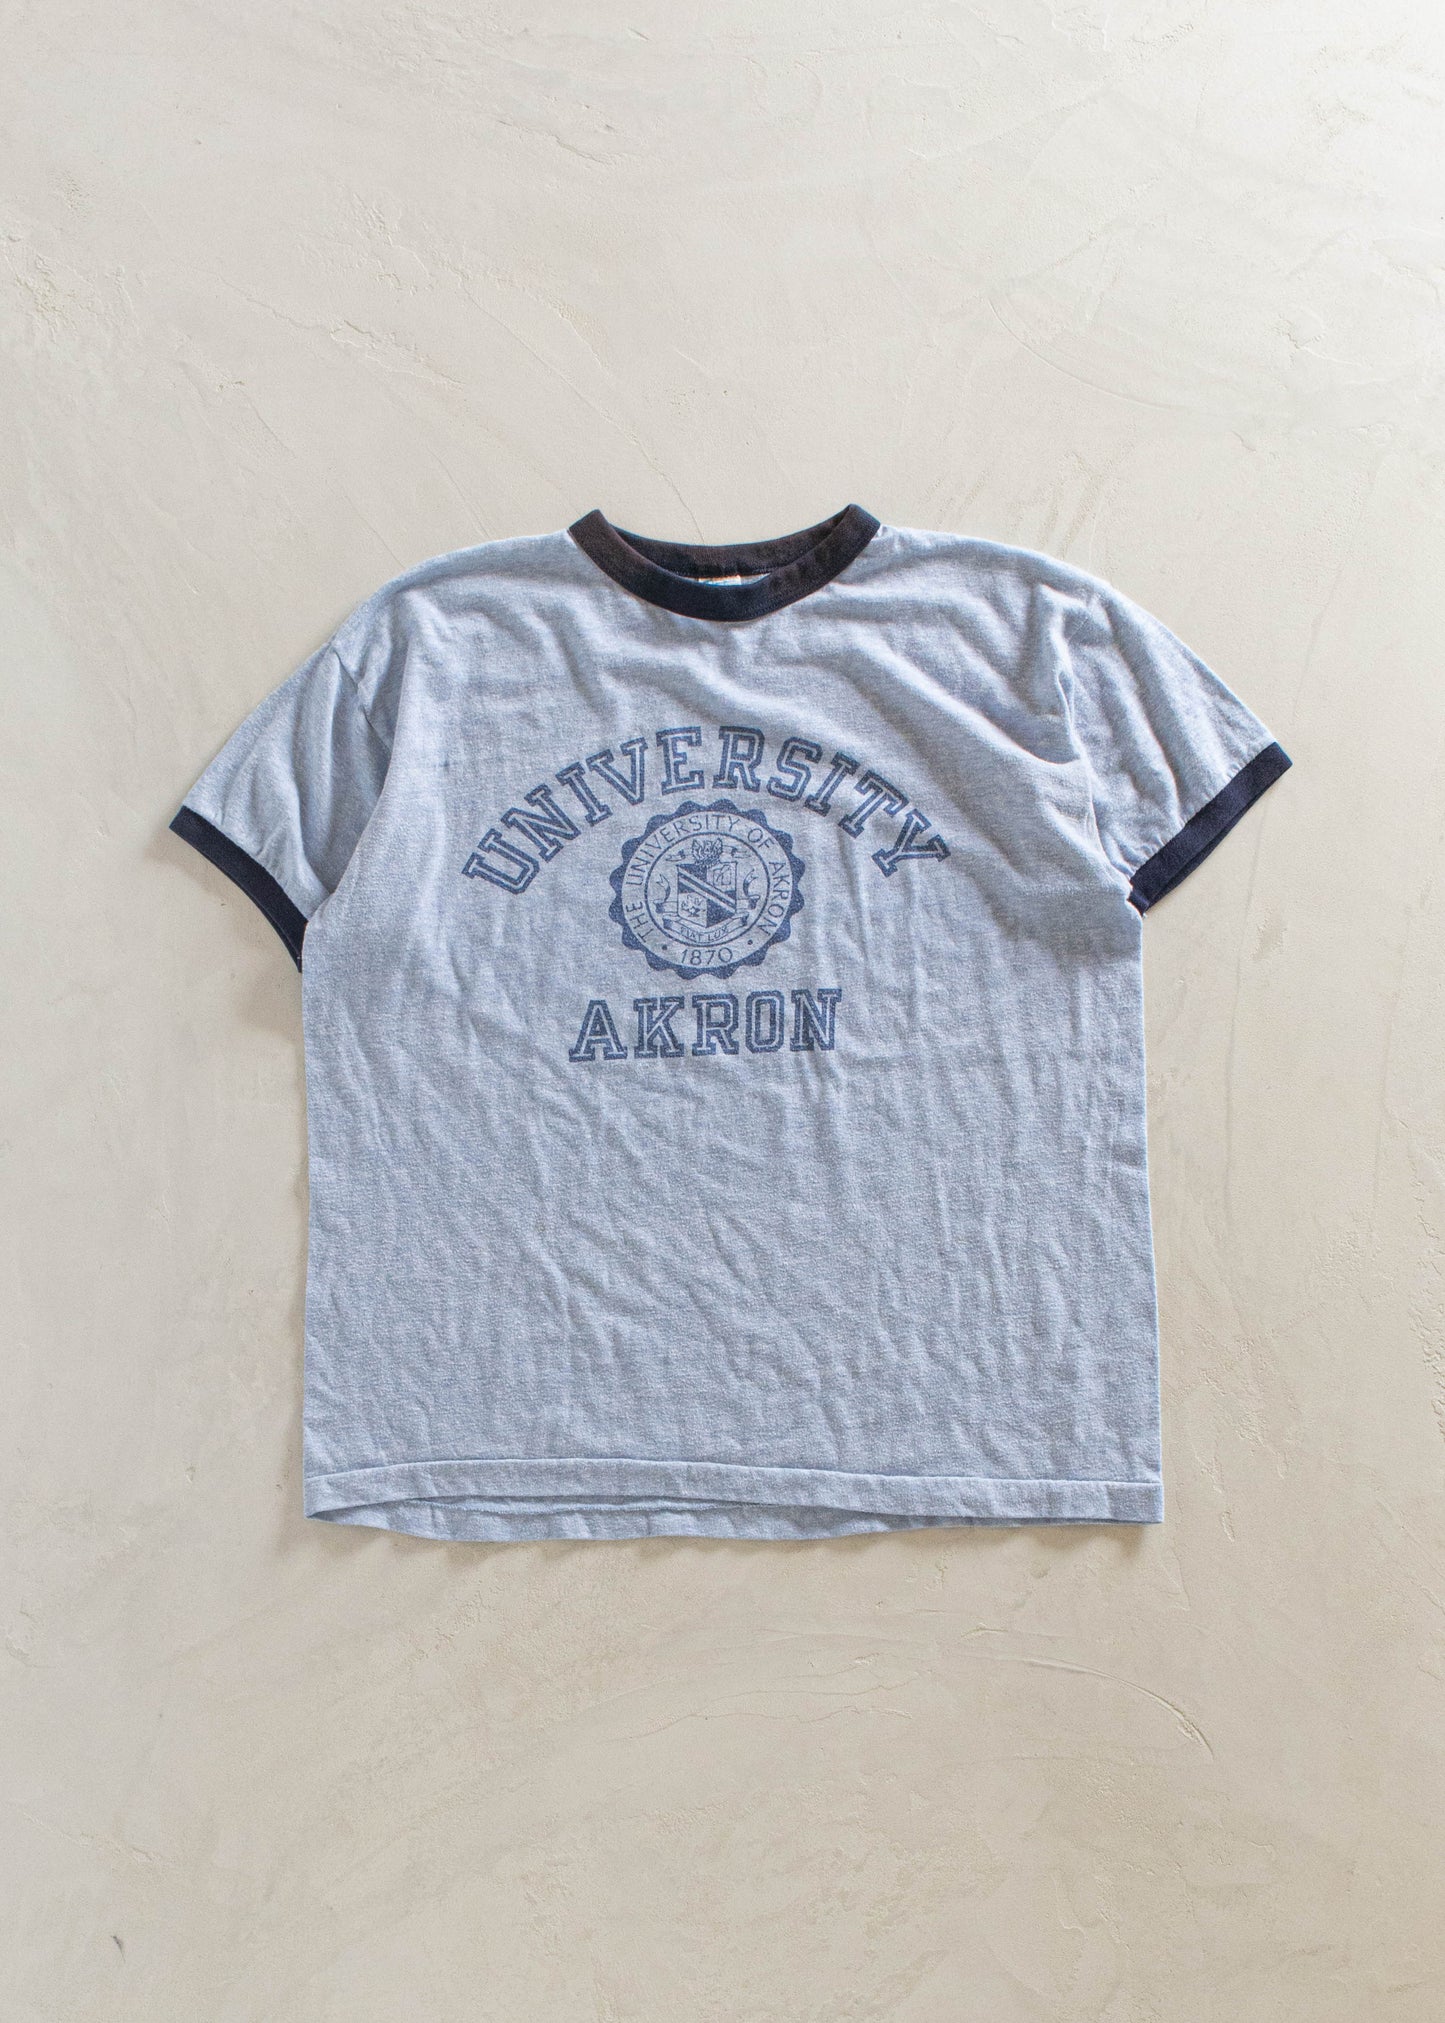 1980s Champion University Akron Souvenir T-Shirt Size M/L